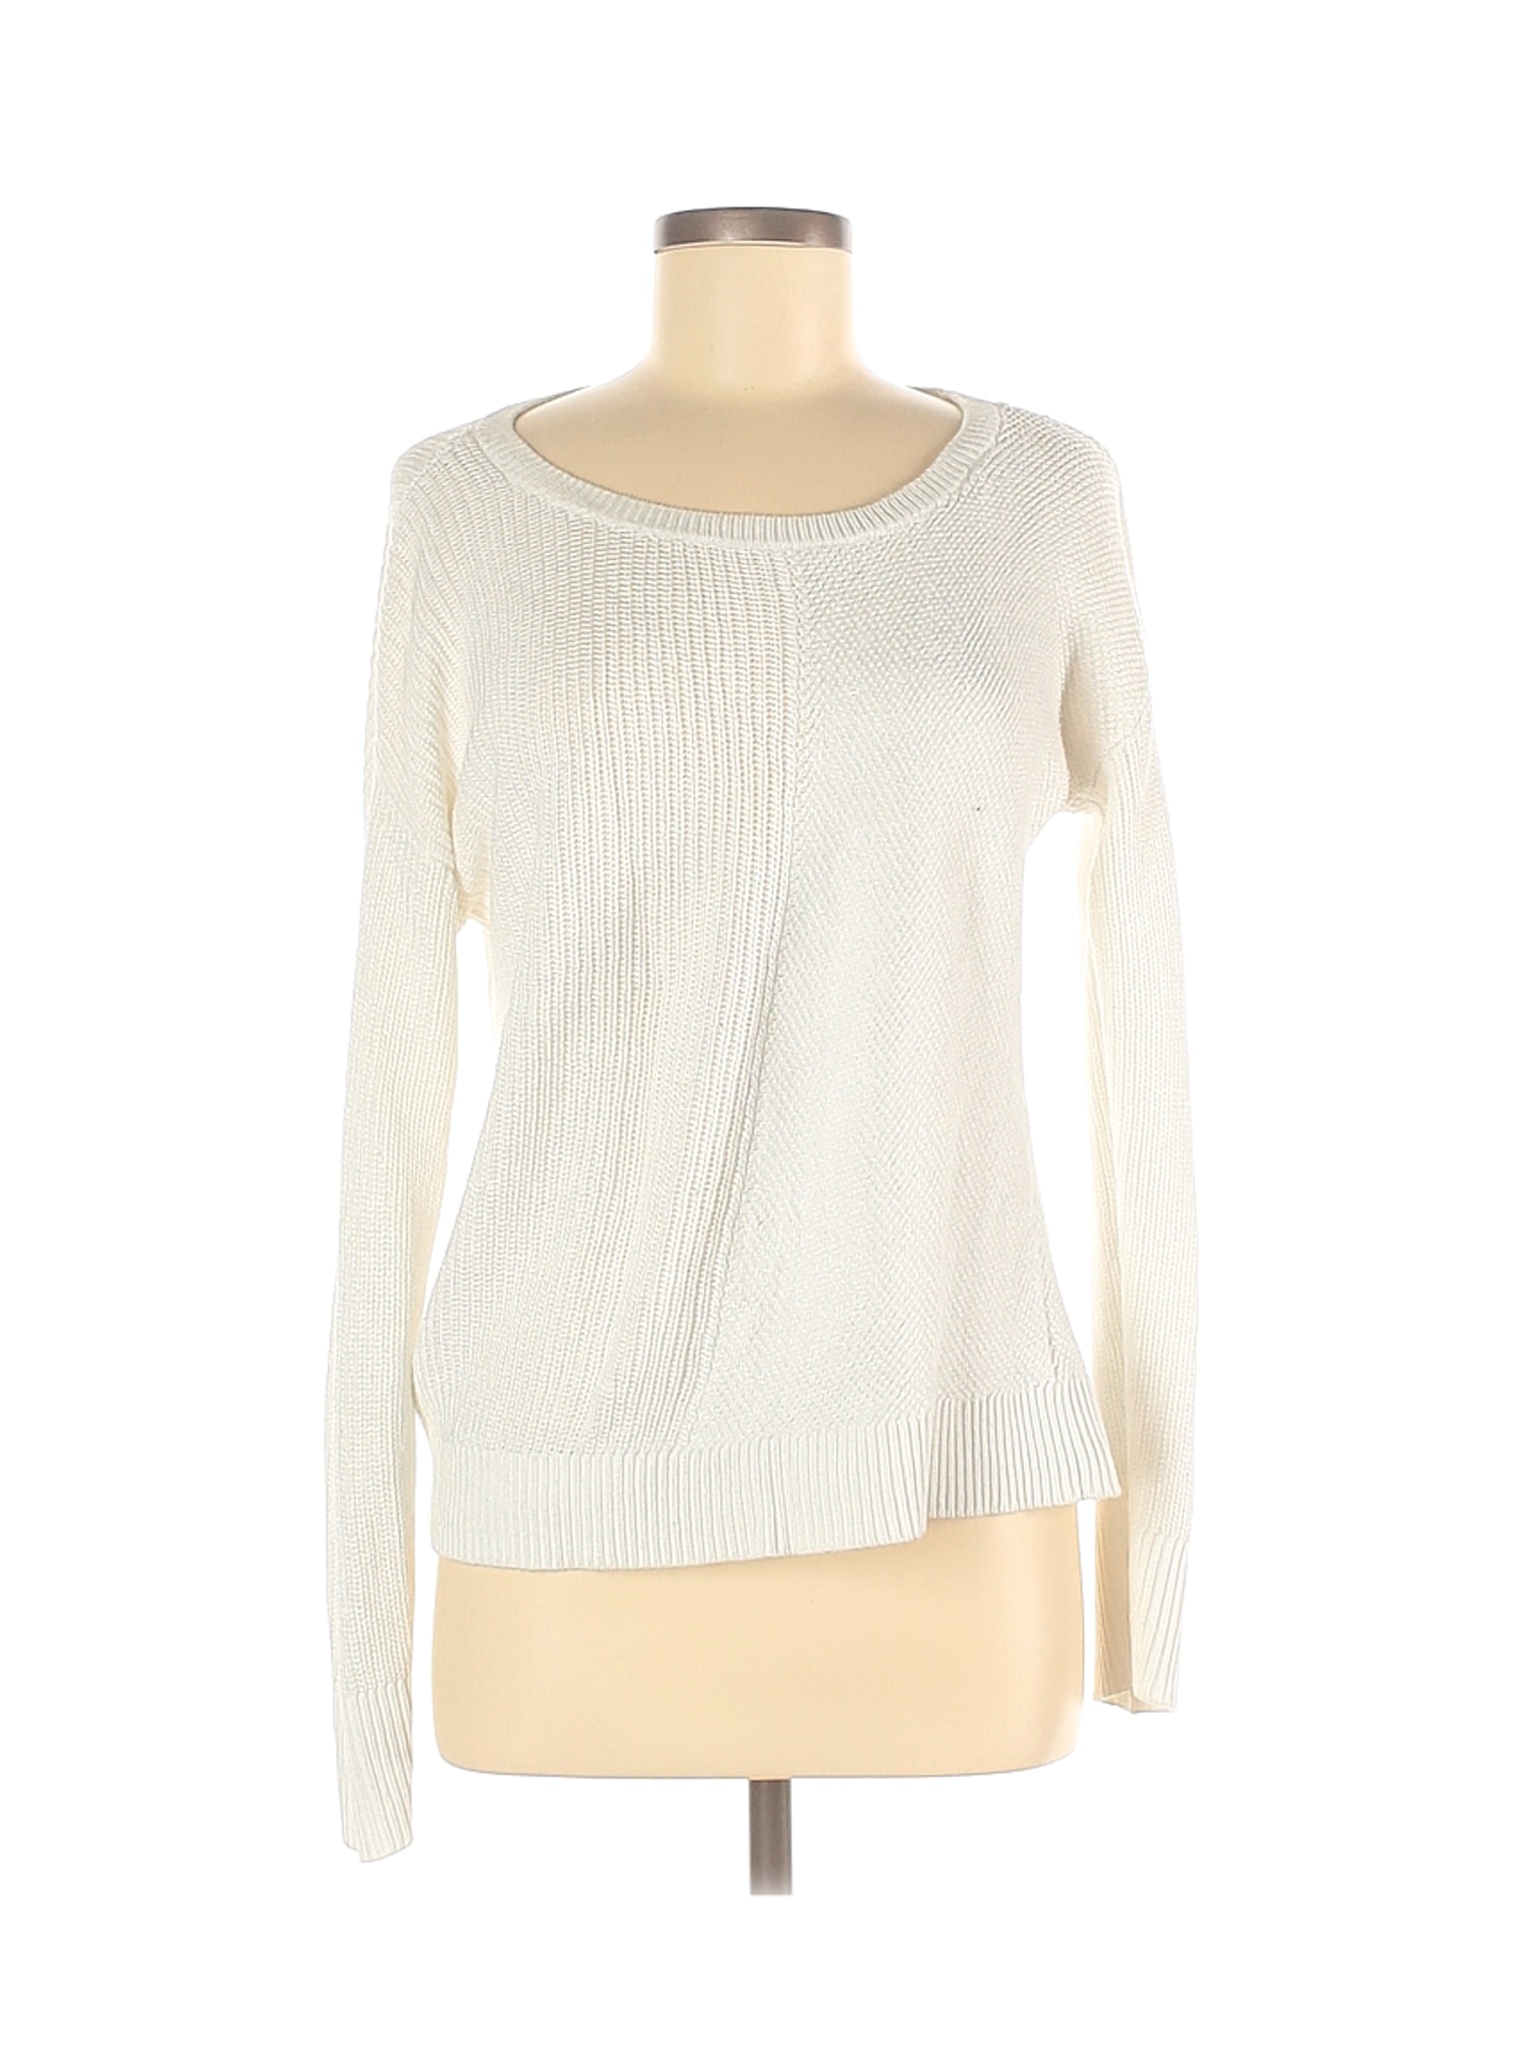 Calvin Klein Women White Pullover Sweater M | eBay